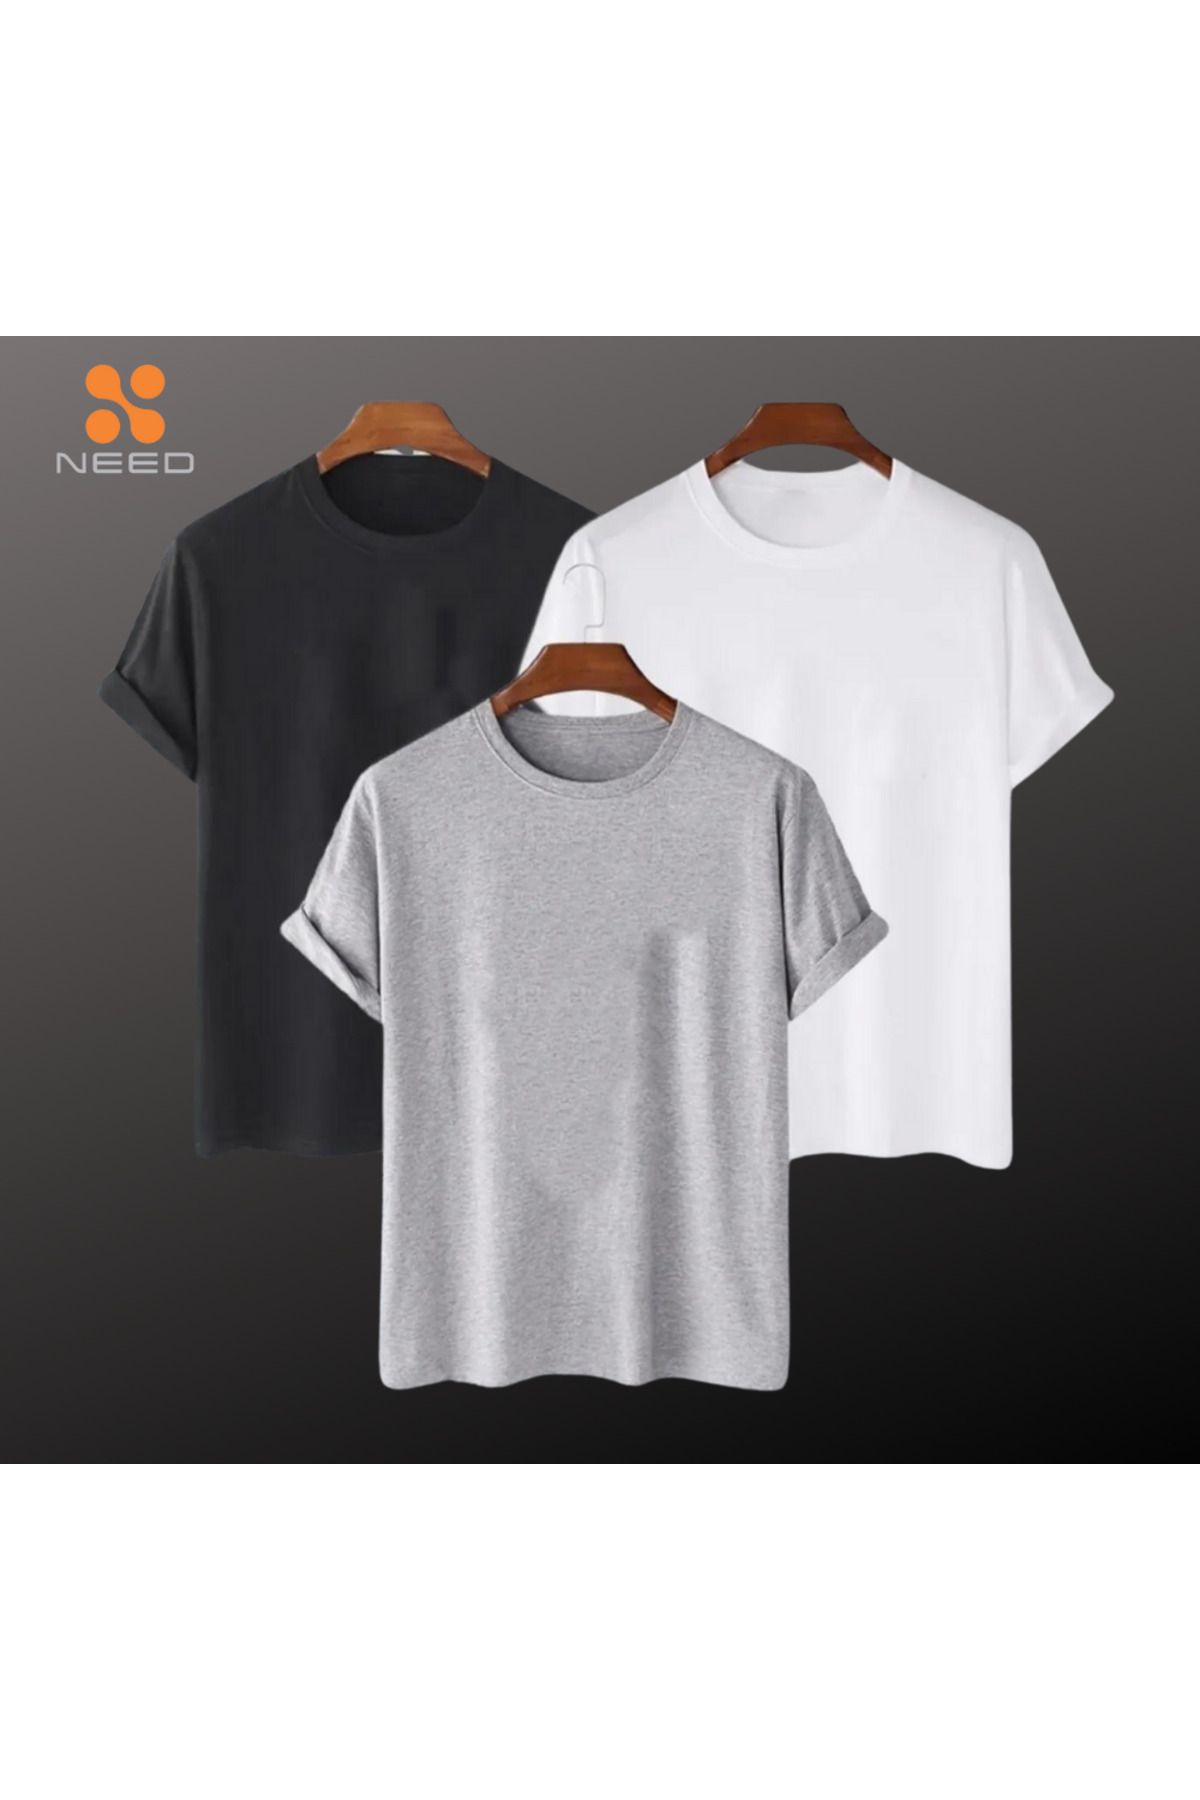 NEED LİFE Erkek 3 Lü Paket %100 Pamuk Rahat Kalıp Likralı Siyah-beyaz-gri Renkli Basic T-shirt